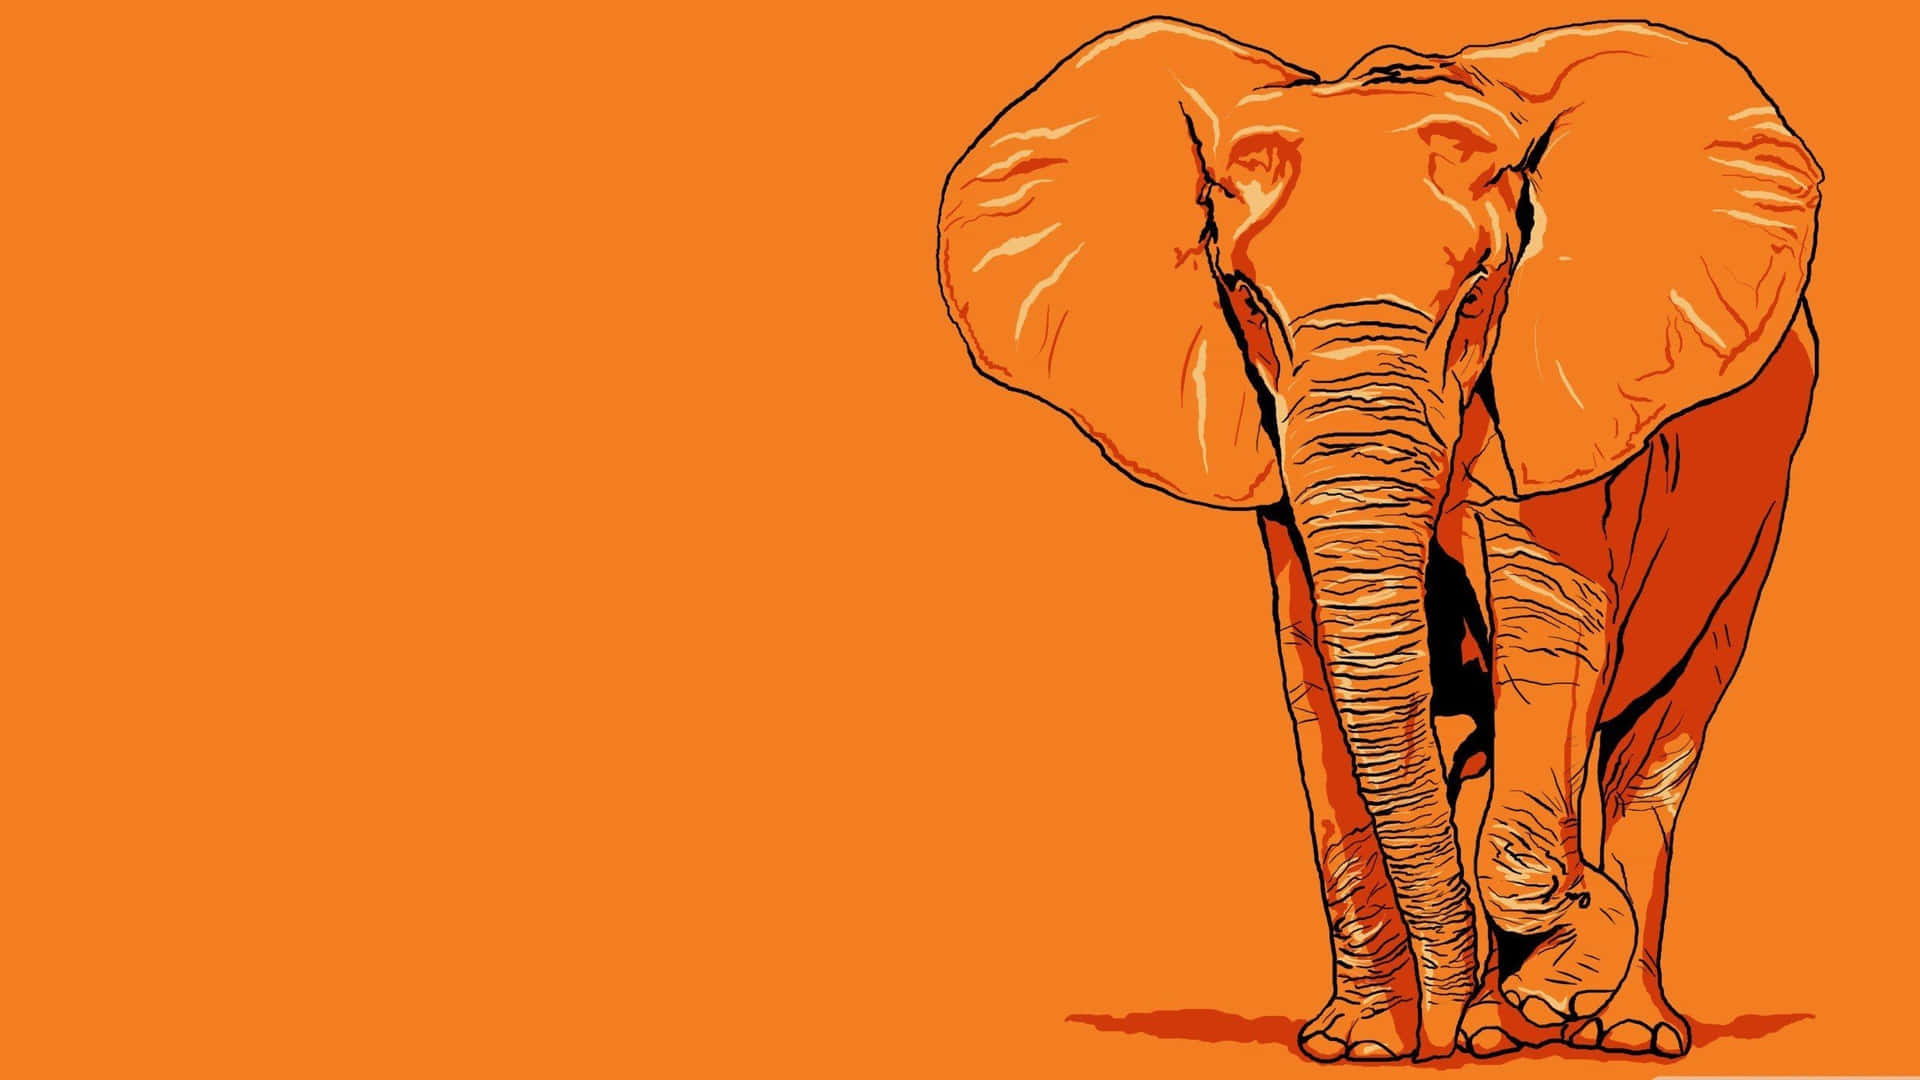 Fondode Arte Digital De Elefante Naranja